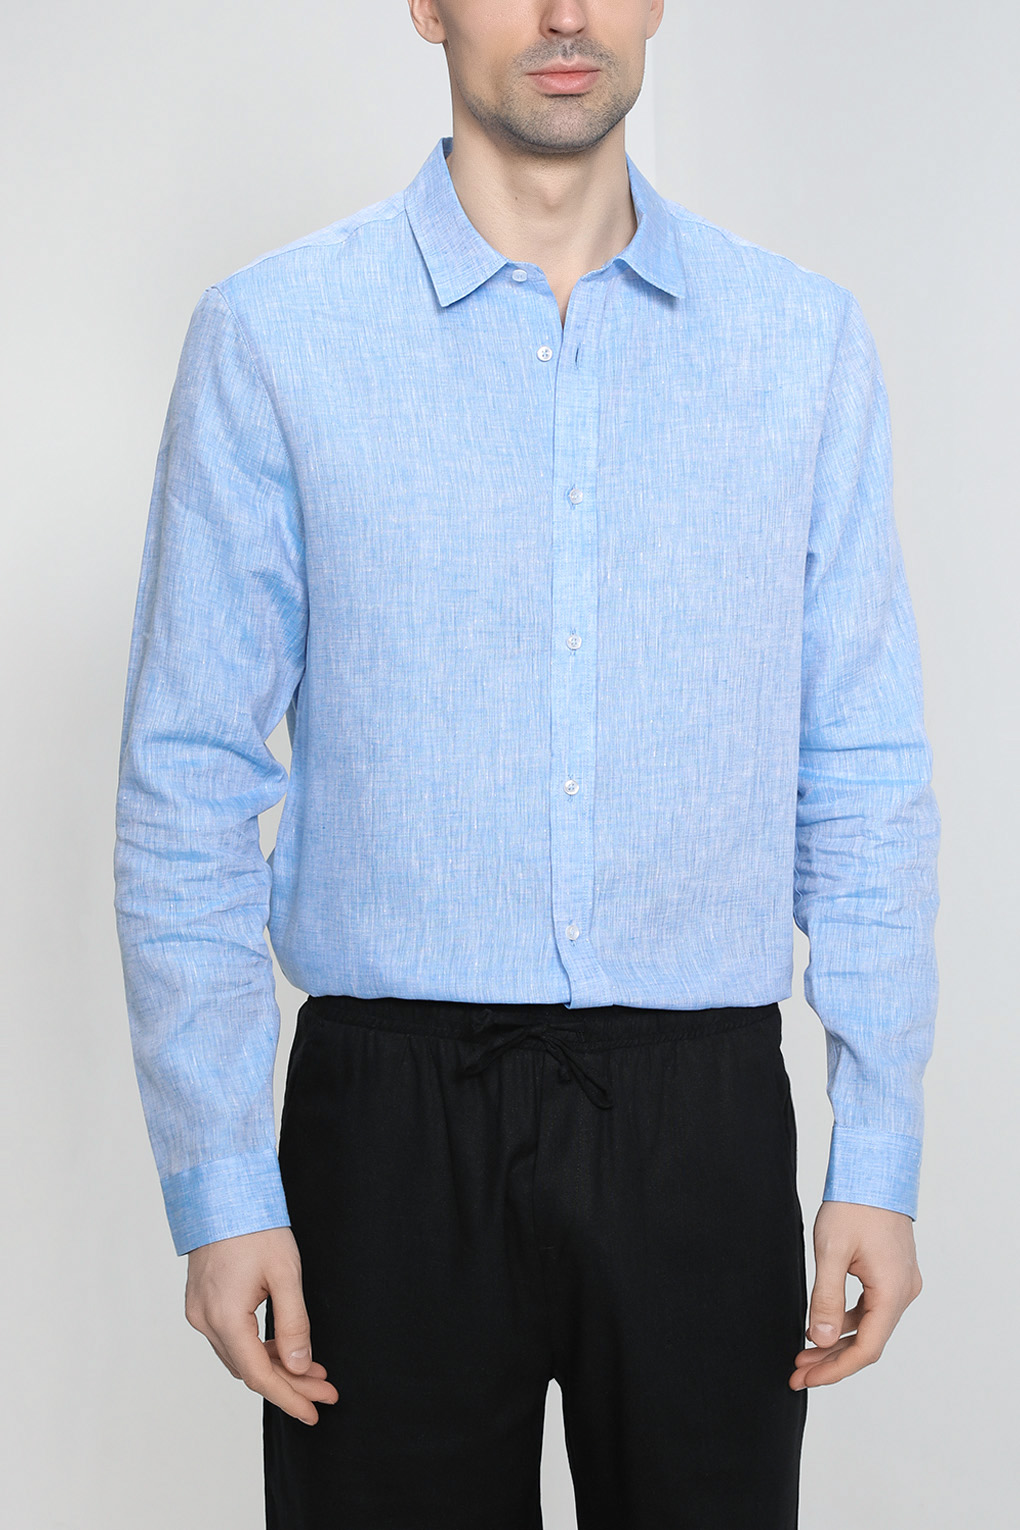 Рубашка мужская D.Molina DM23023472 голубая 54 RU